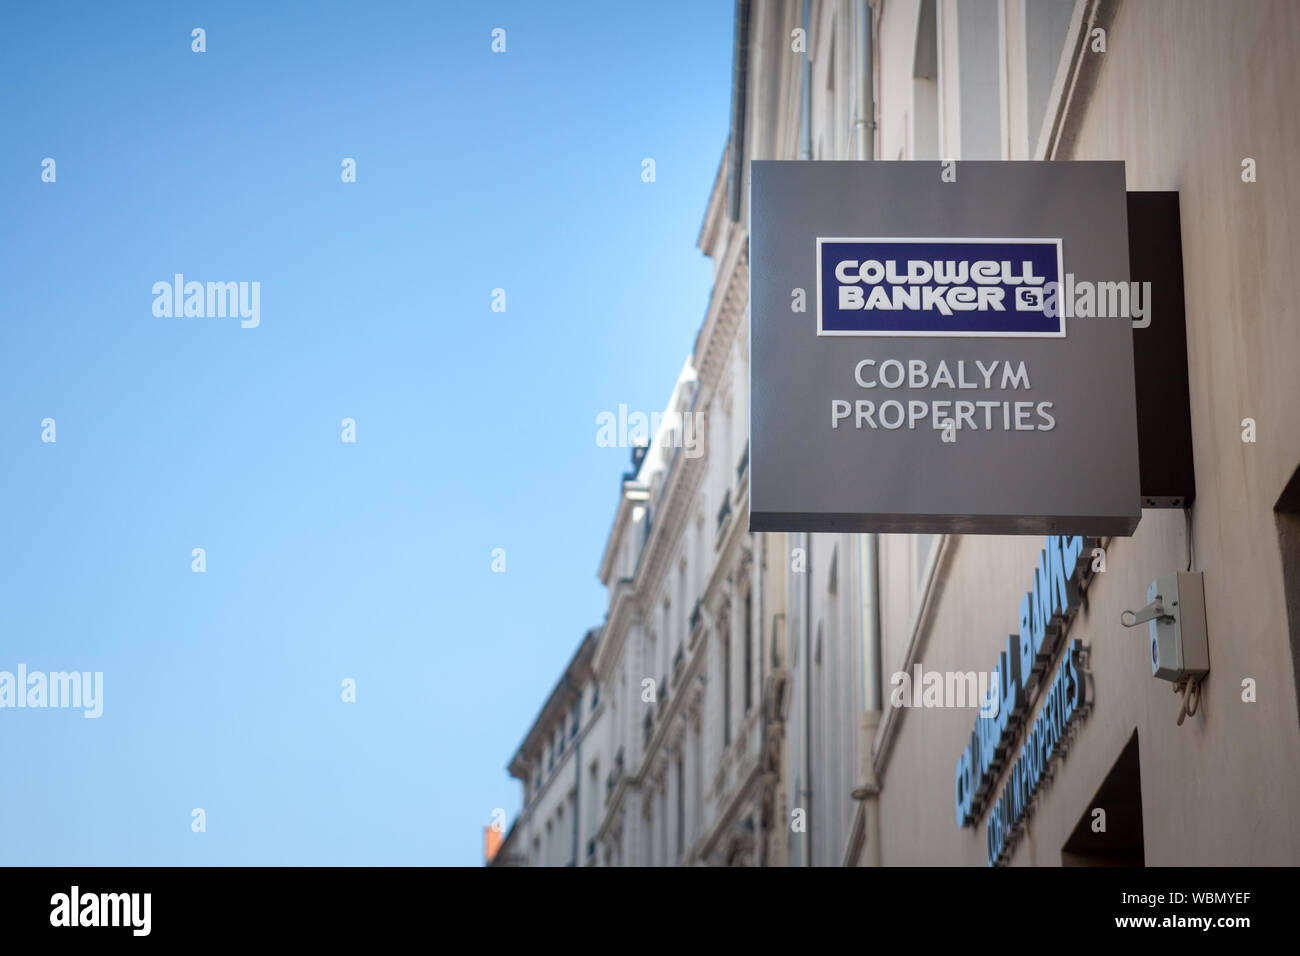 LYON, FRANCIA - 19 de julio de 2019: el logotipo de Coldwell Banker en frente de su agente inmobiliario de Lyon. Coldwell Banker es la franquicia inmobiliaria americana Foto de stock